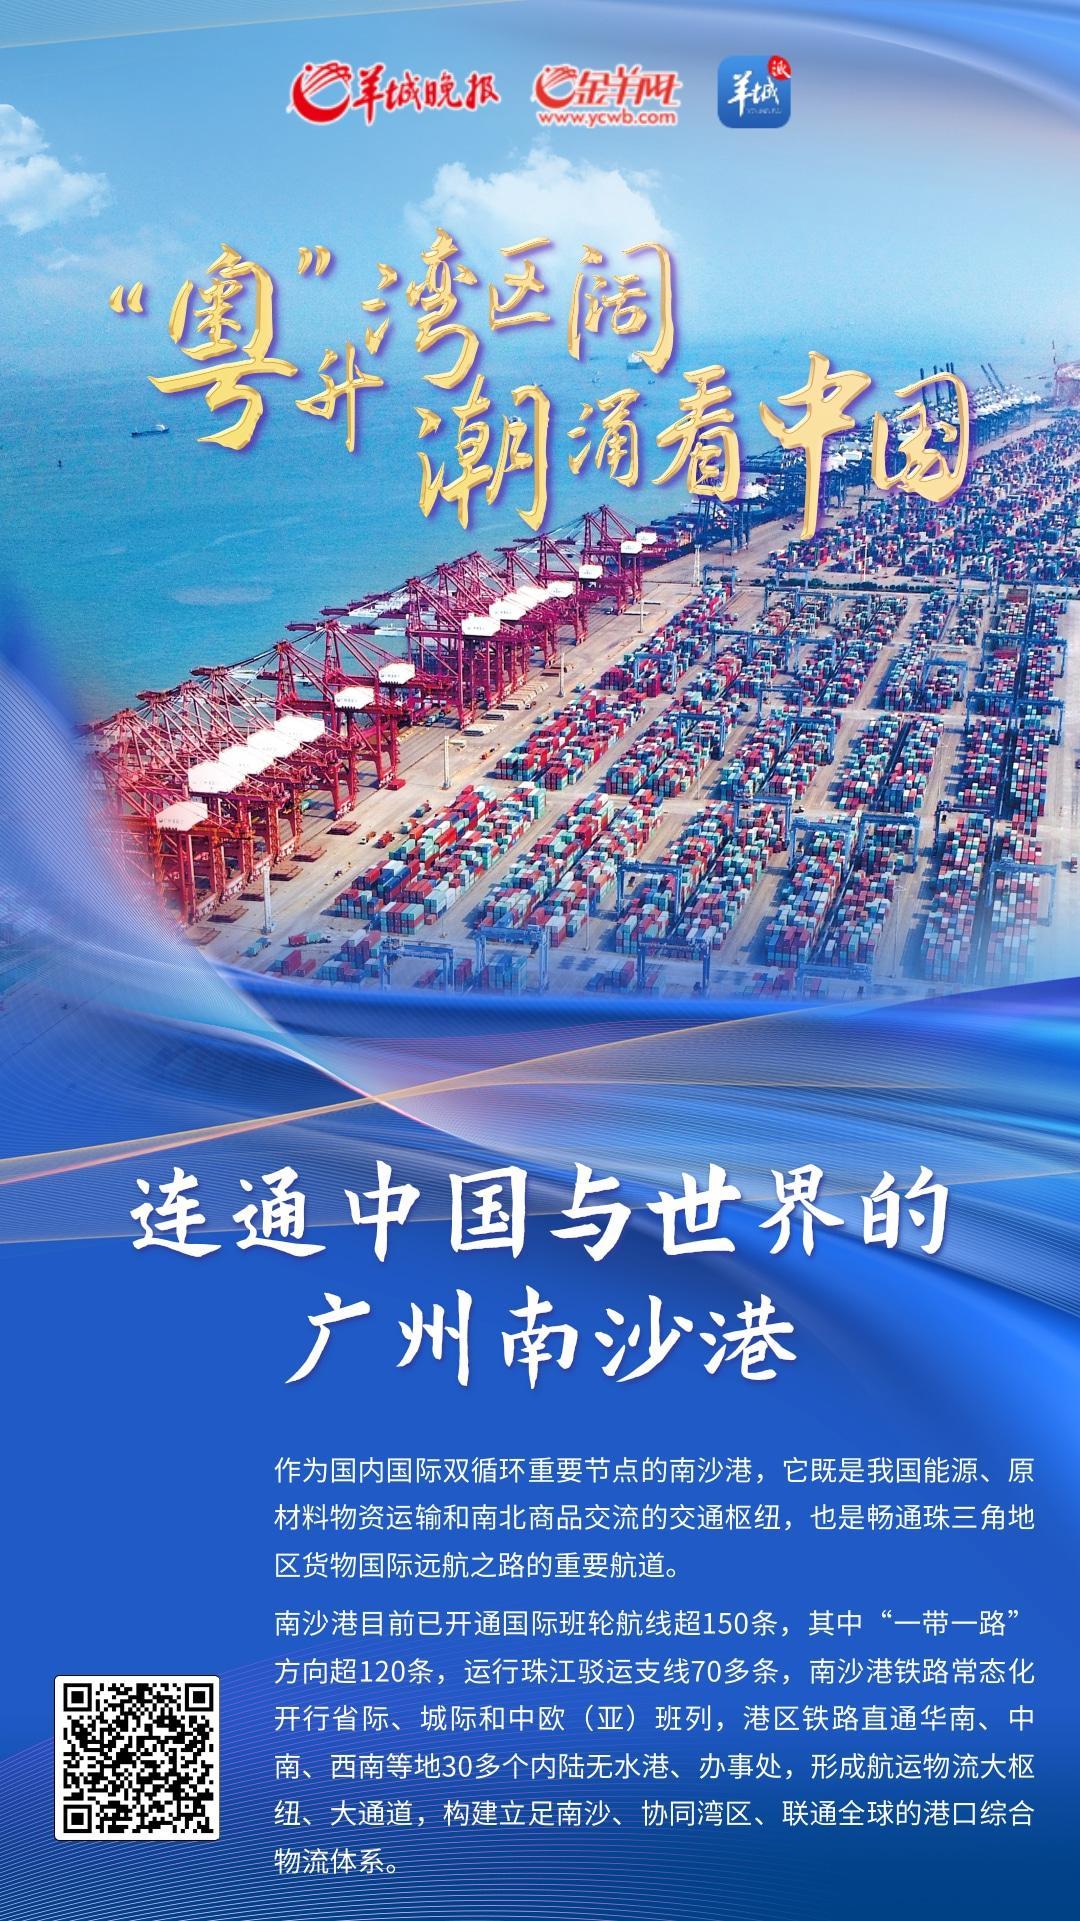 【海报】连通中国与世界的广州南沙港